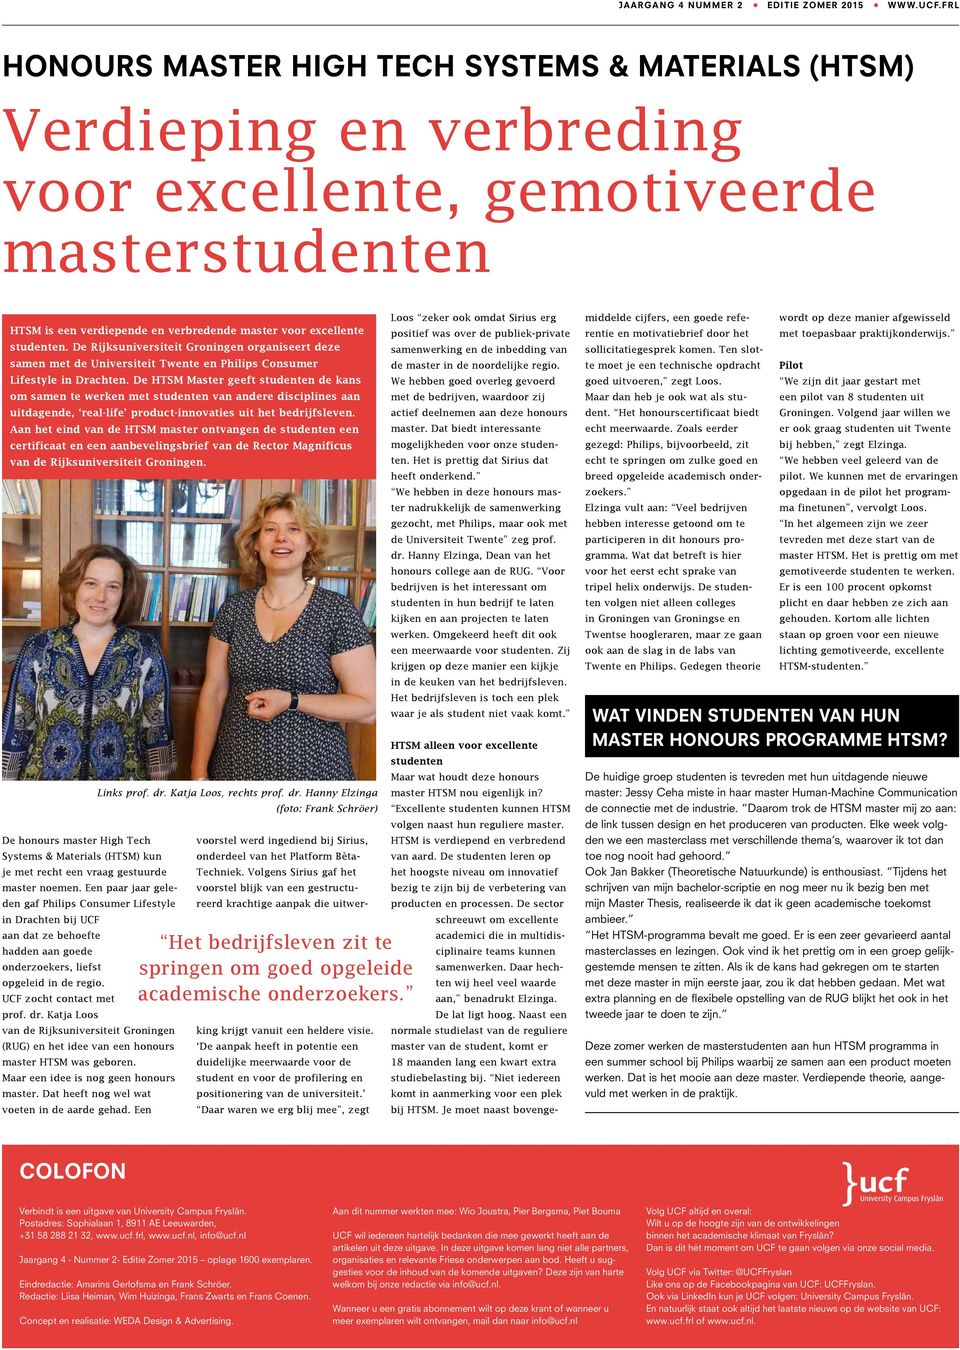 De Rijksuniversiteit Groningen organiseert deze samen met de Universiteit Twente en Philips Consumer Lifestyle in Drachten.